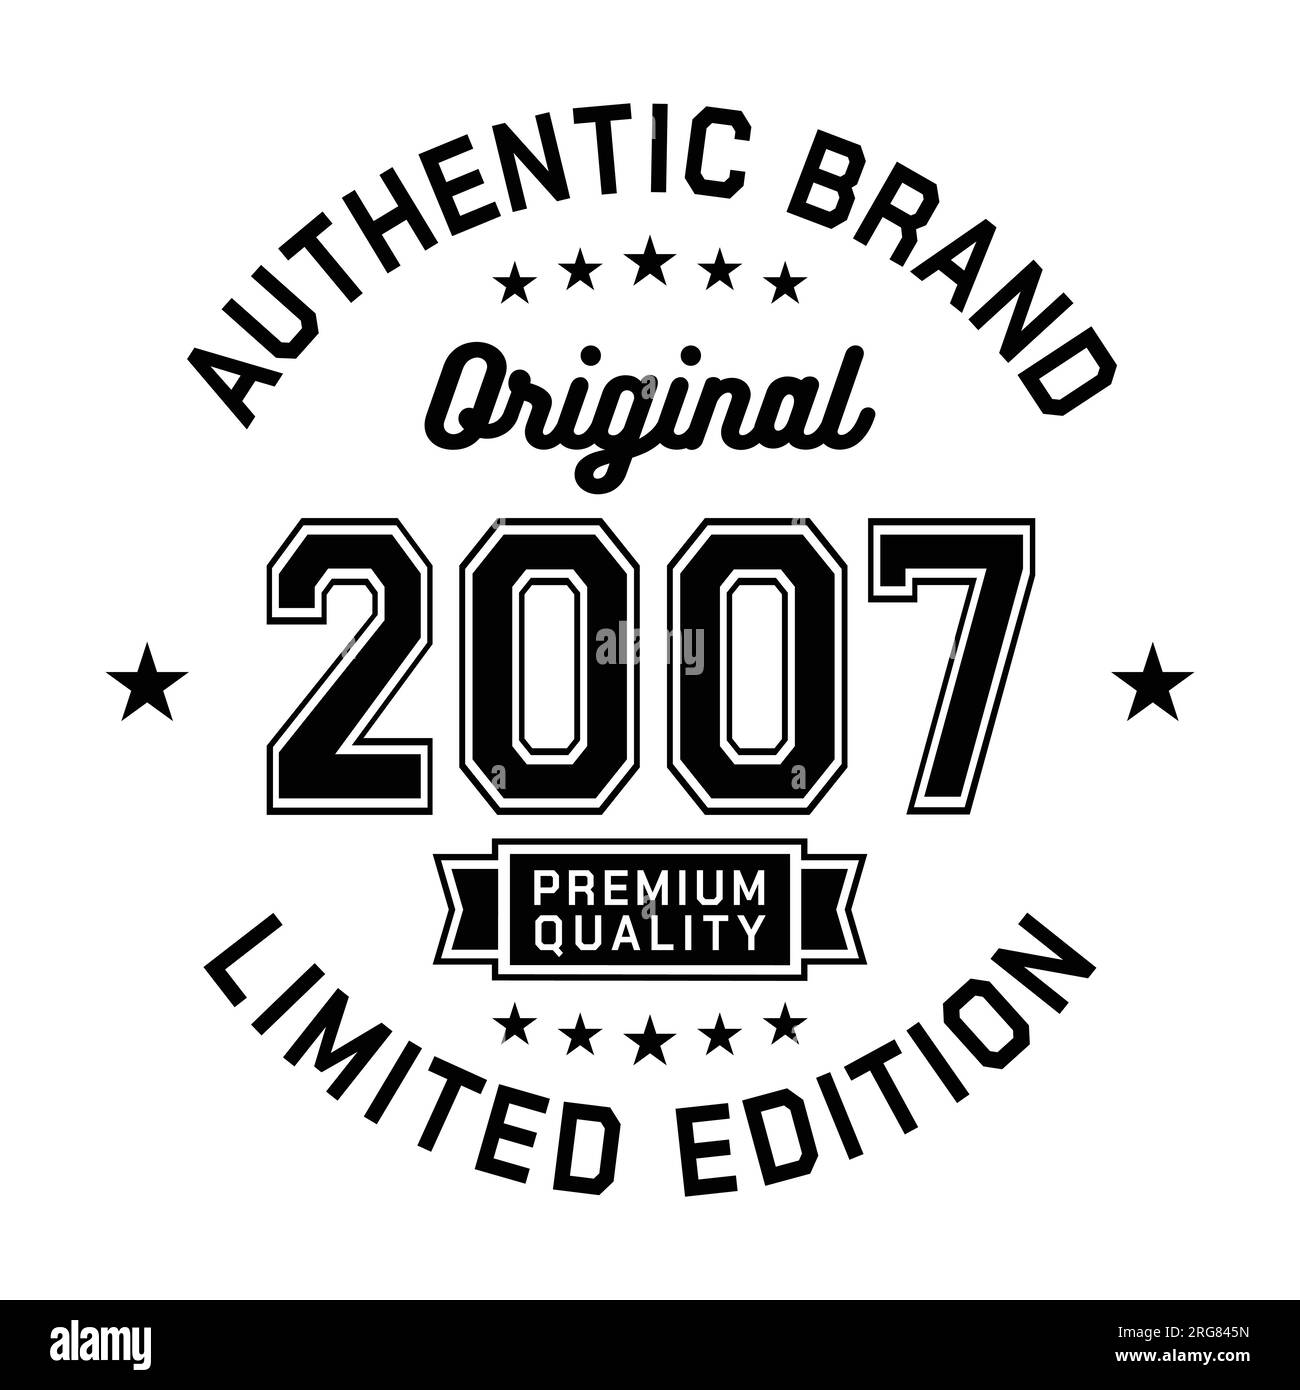 2007 authentische Marke. Modisches Bekleidungsdesign. Grafikdesign für T-Shirt. Vektor und Illustration. Stock Vektor